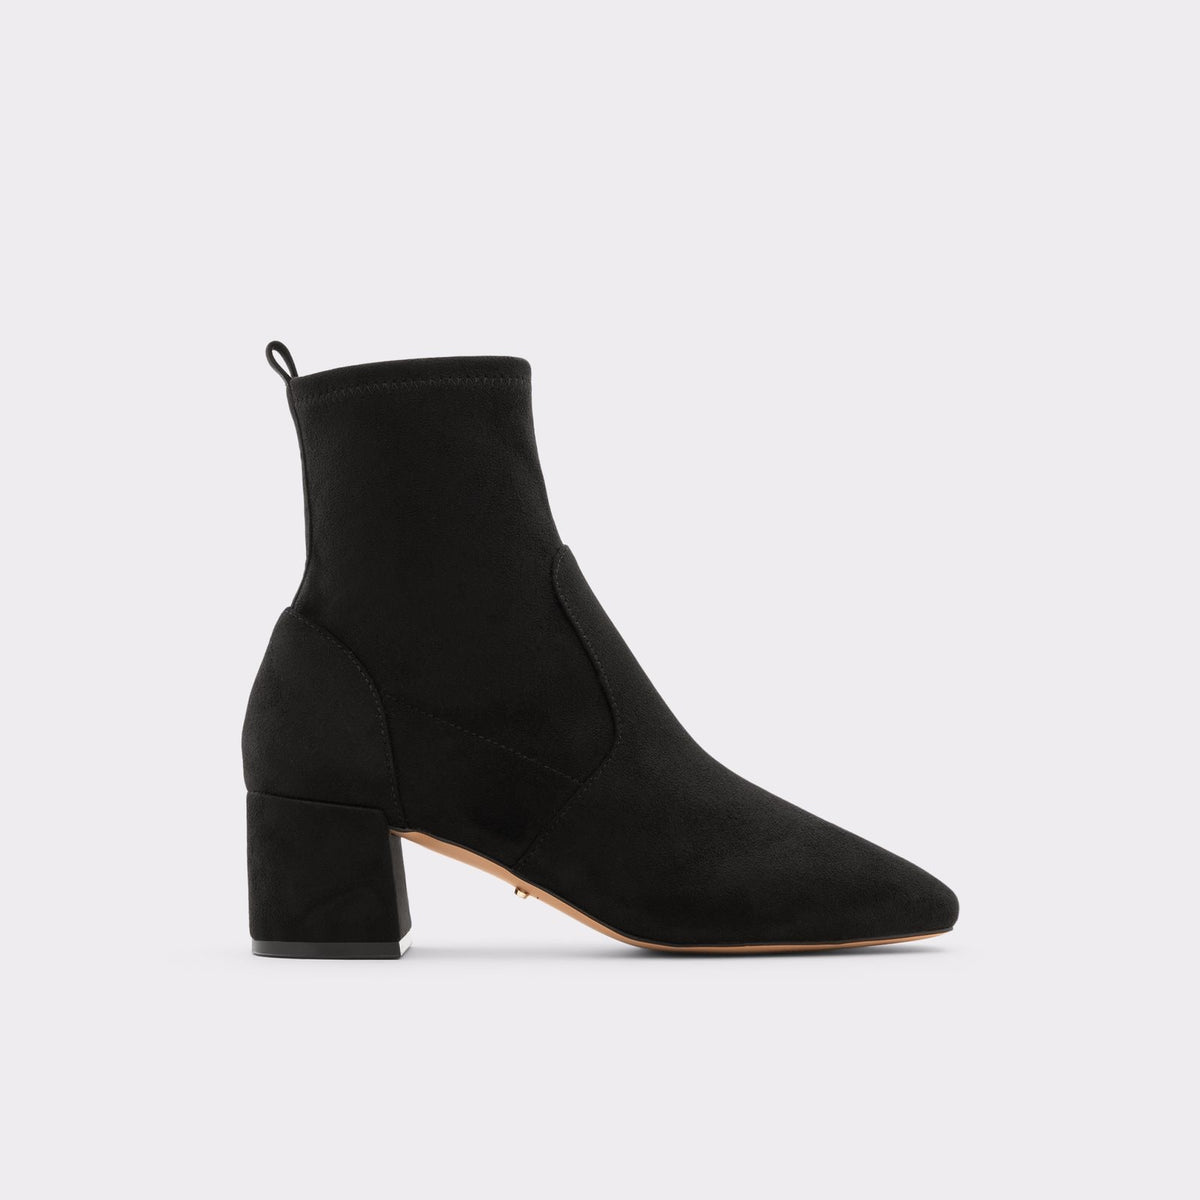 Aldo Women's Ankle Boots Ibiraswen (Black) – ALDO UK